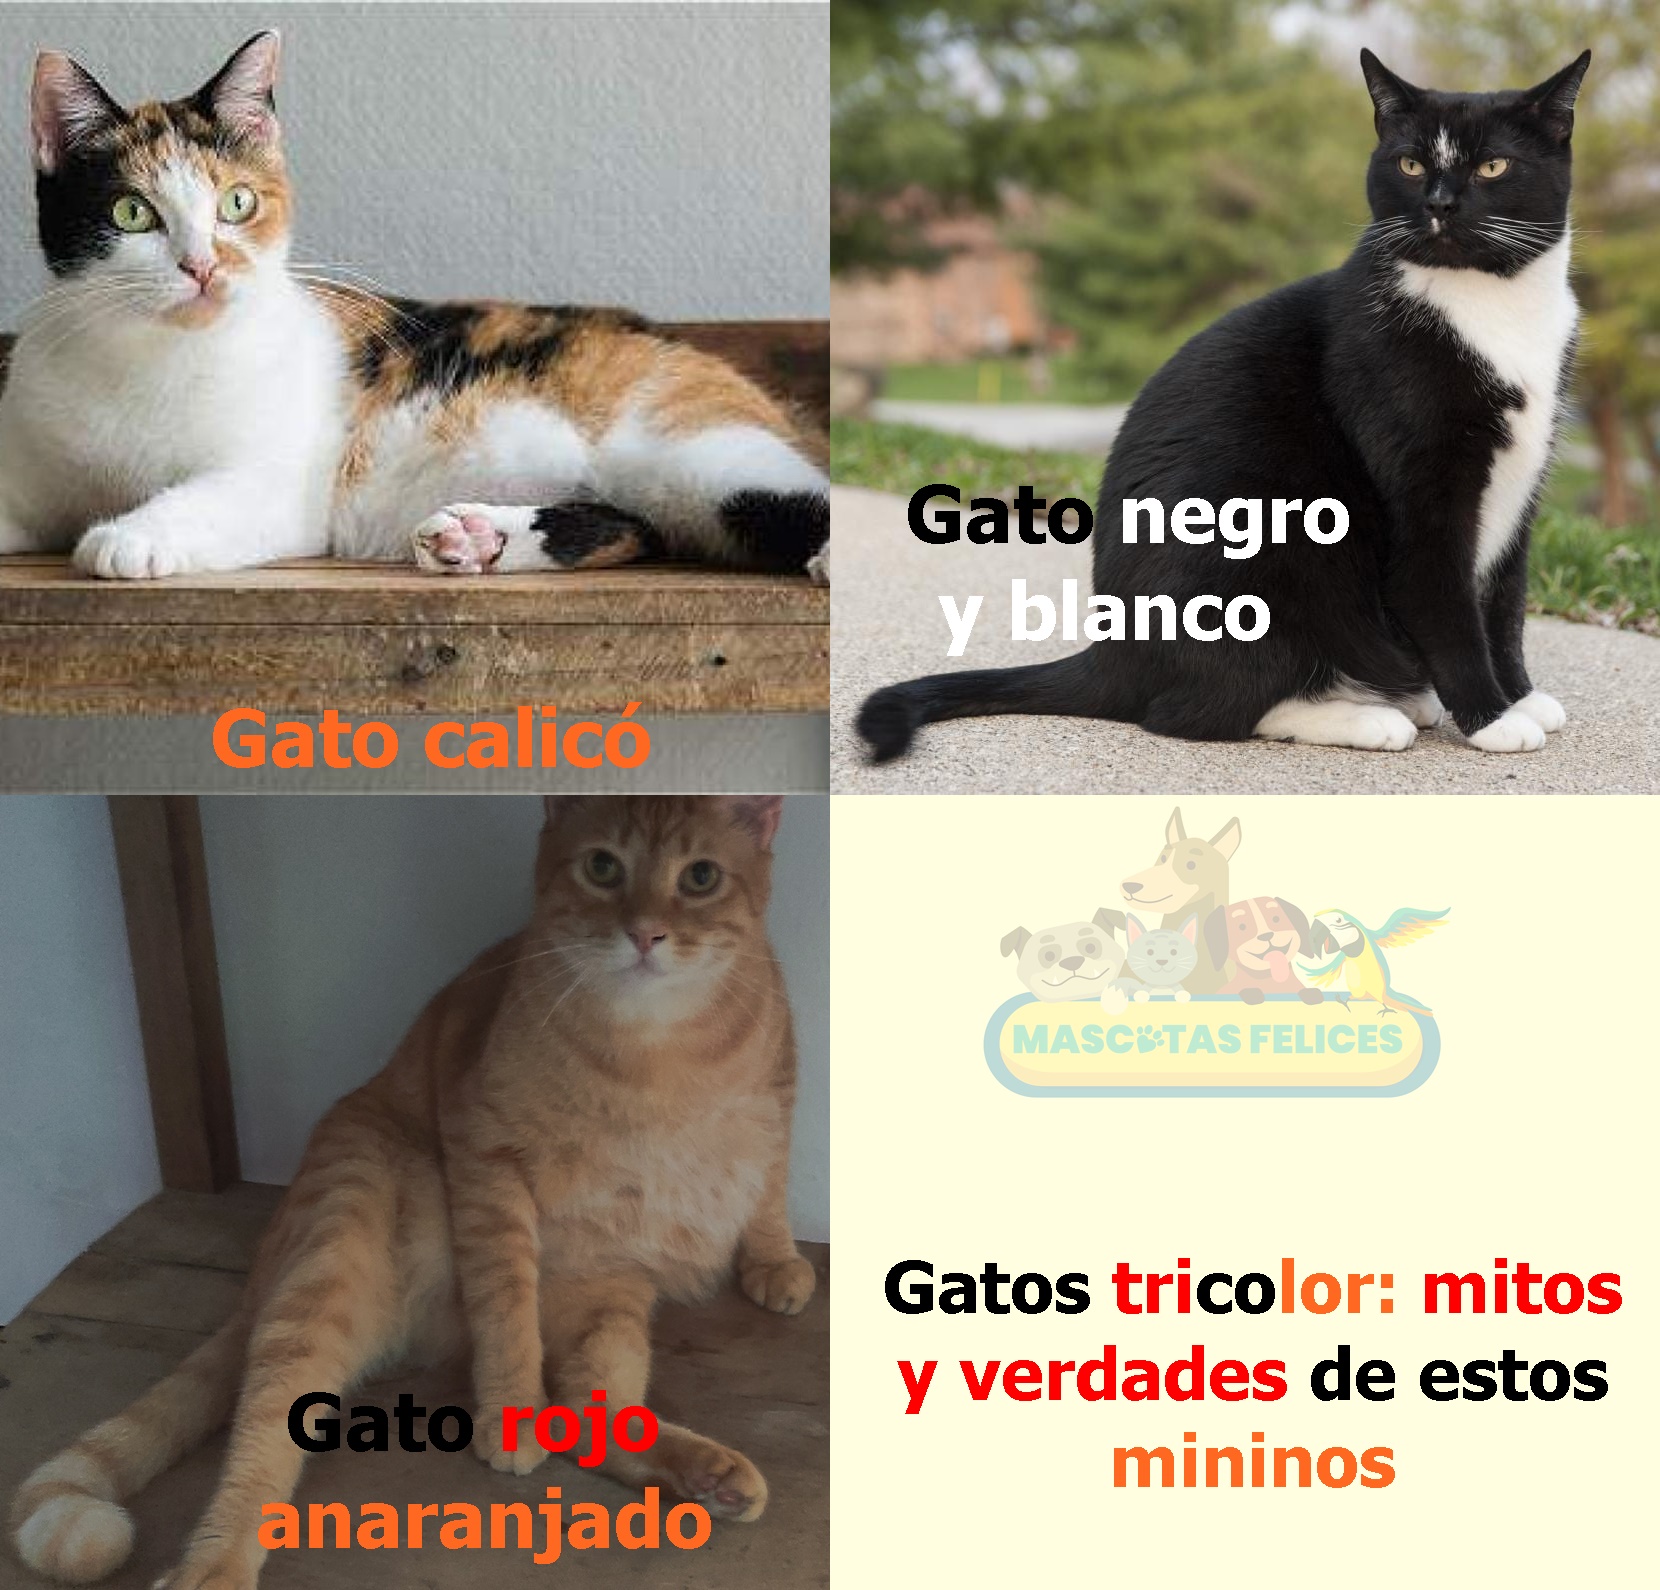 Gatos tricolor: mitos y verdades de estos mininos